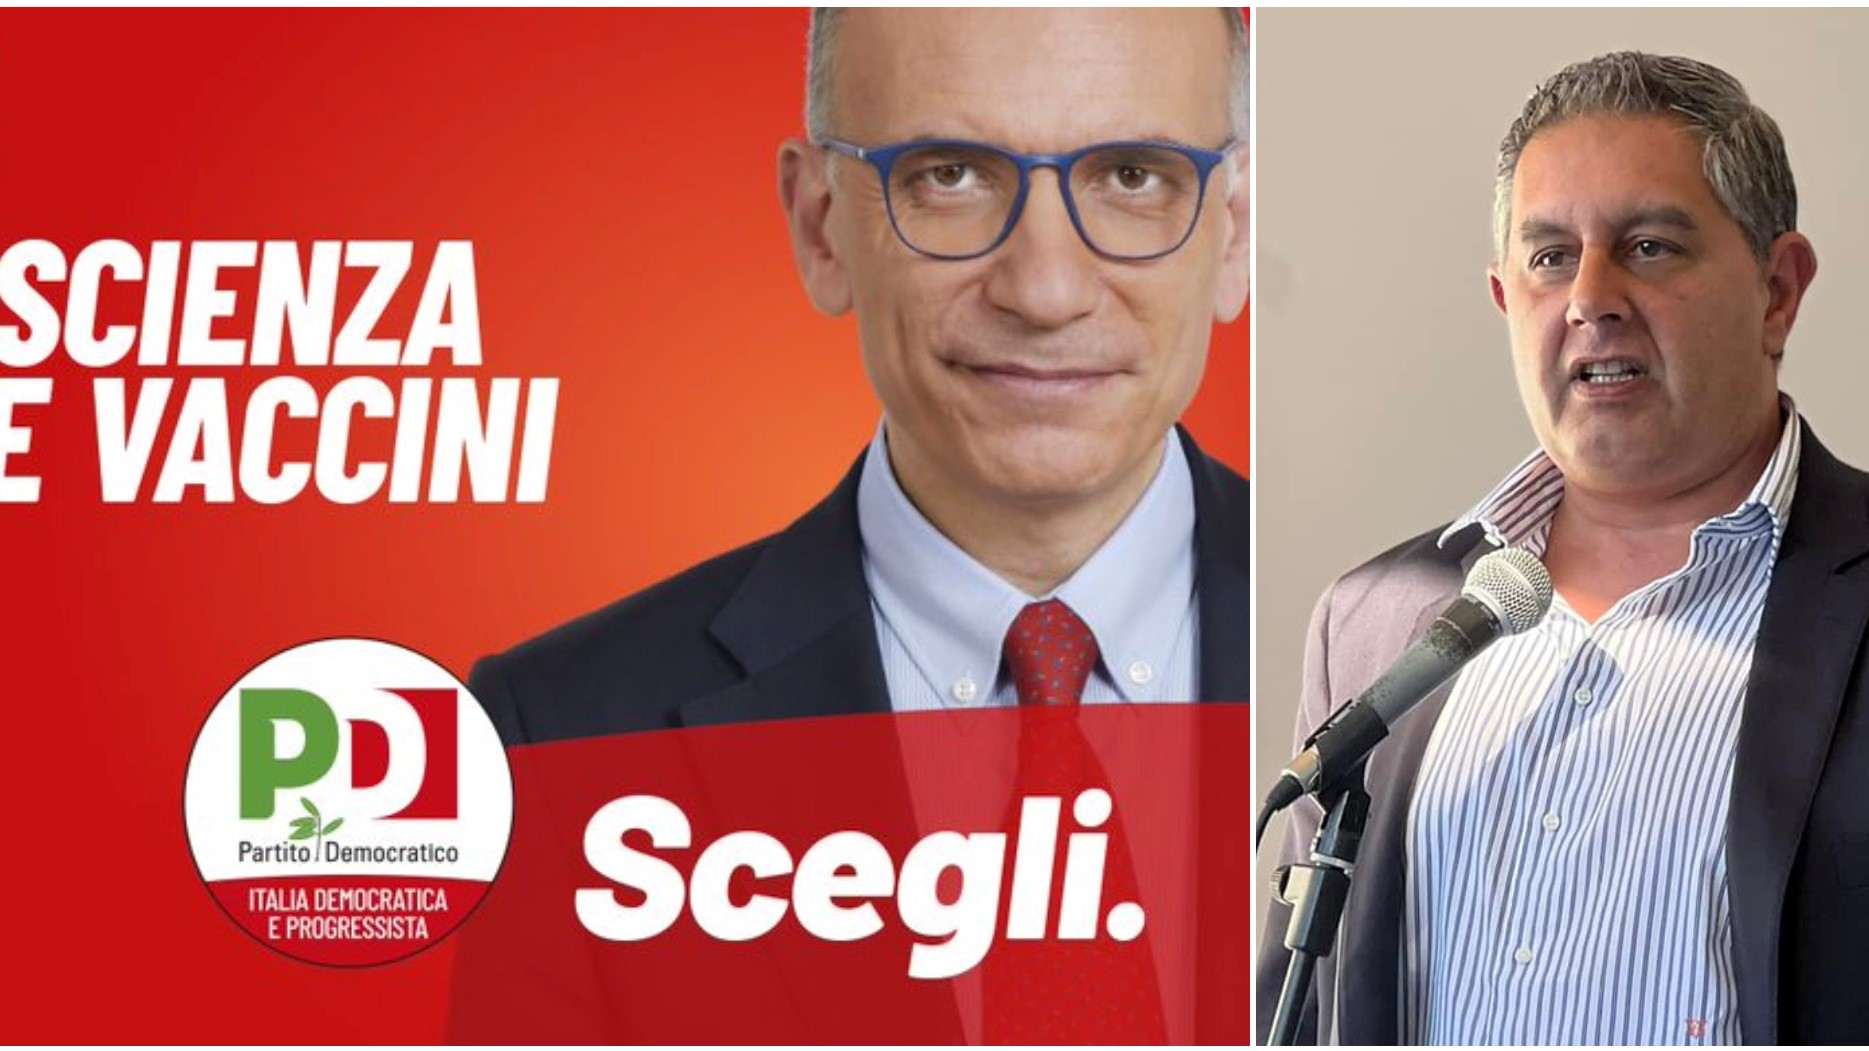 Elezioni, Toti attacca il Pd sul manifesto per i vaccini: "Strumentalizzazione offensiva e falsa"